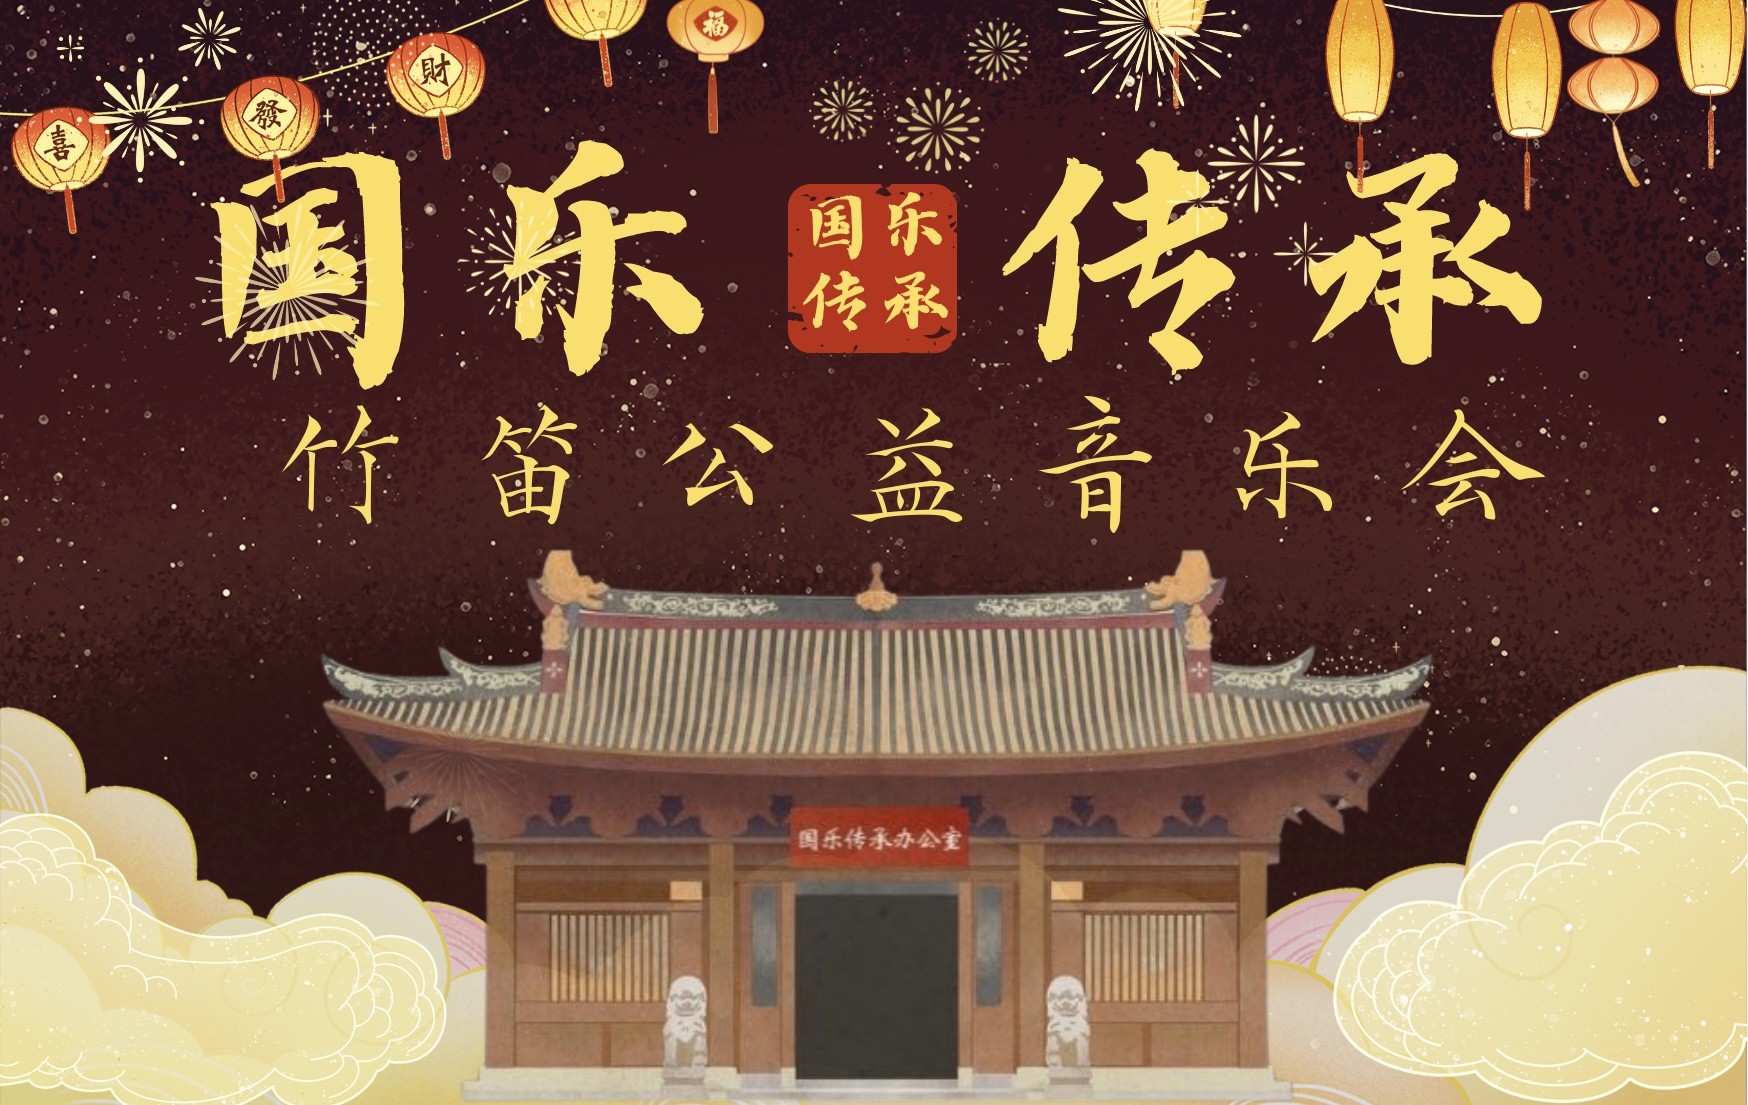 国乐传承系列—竹笛公益专场音乐会圆满落幕！